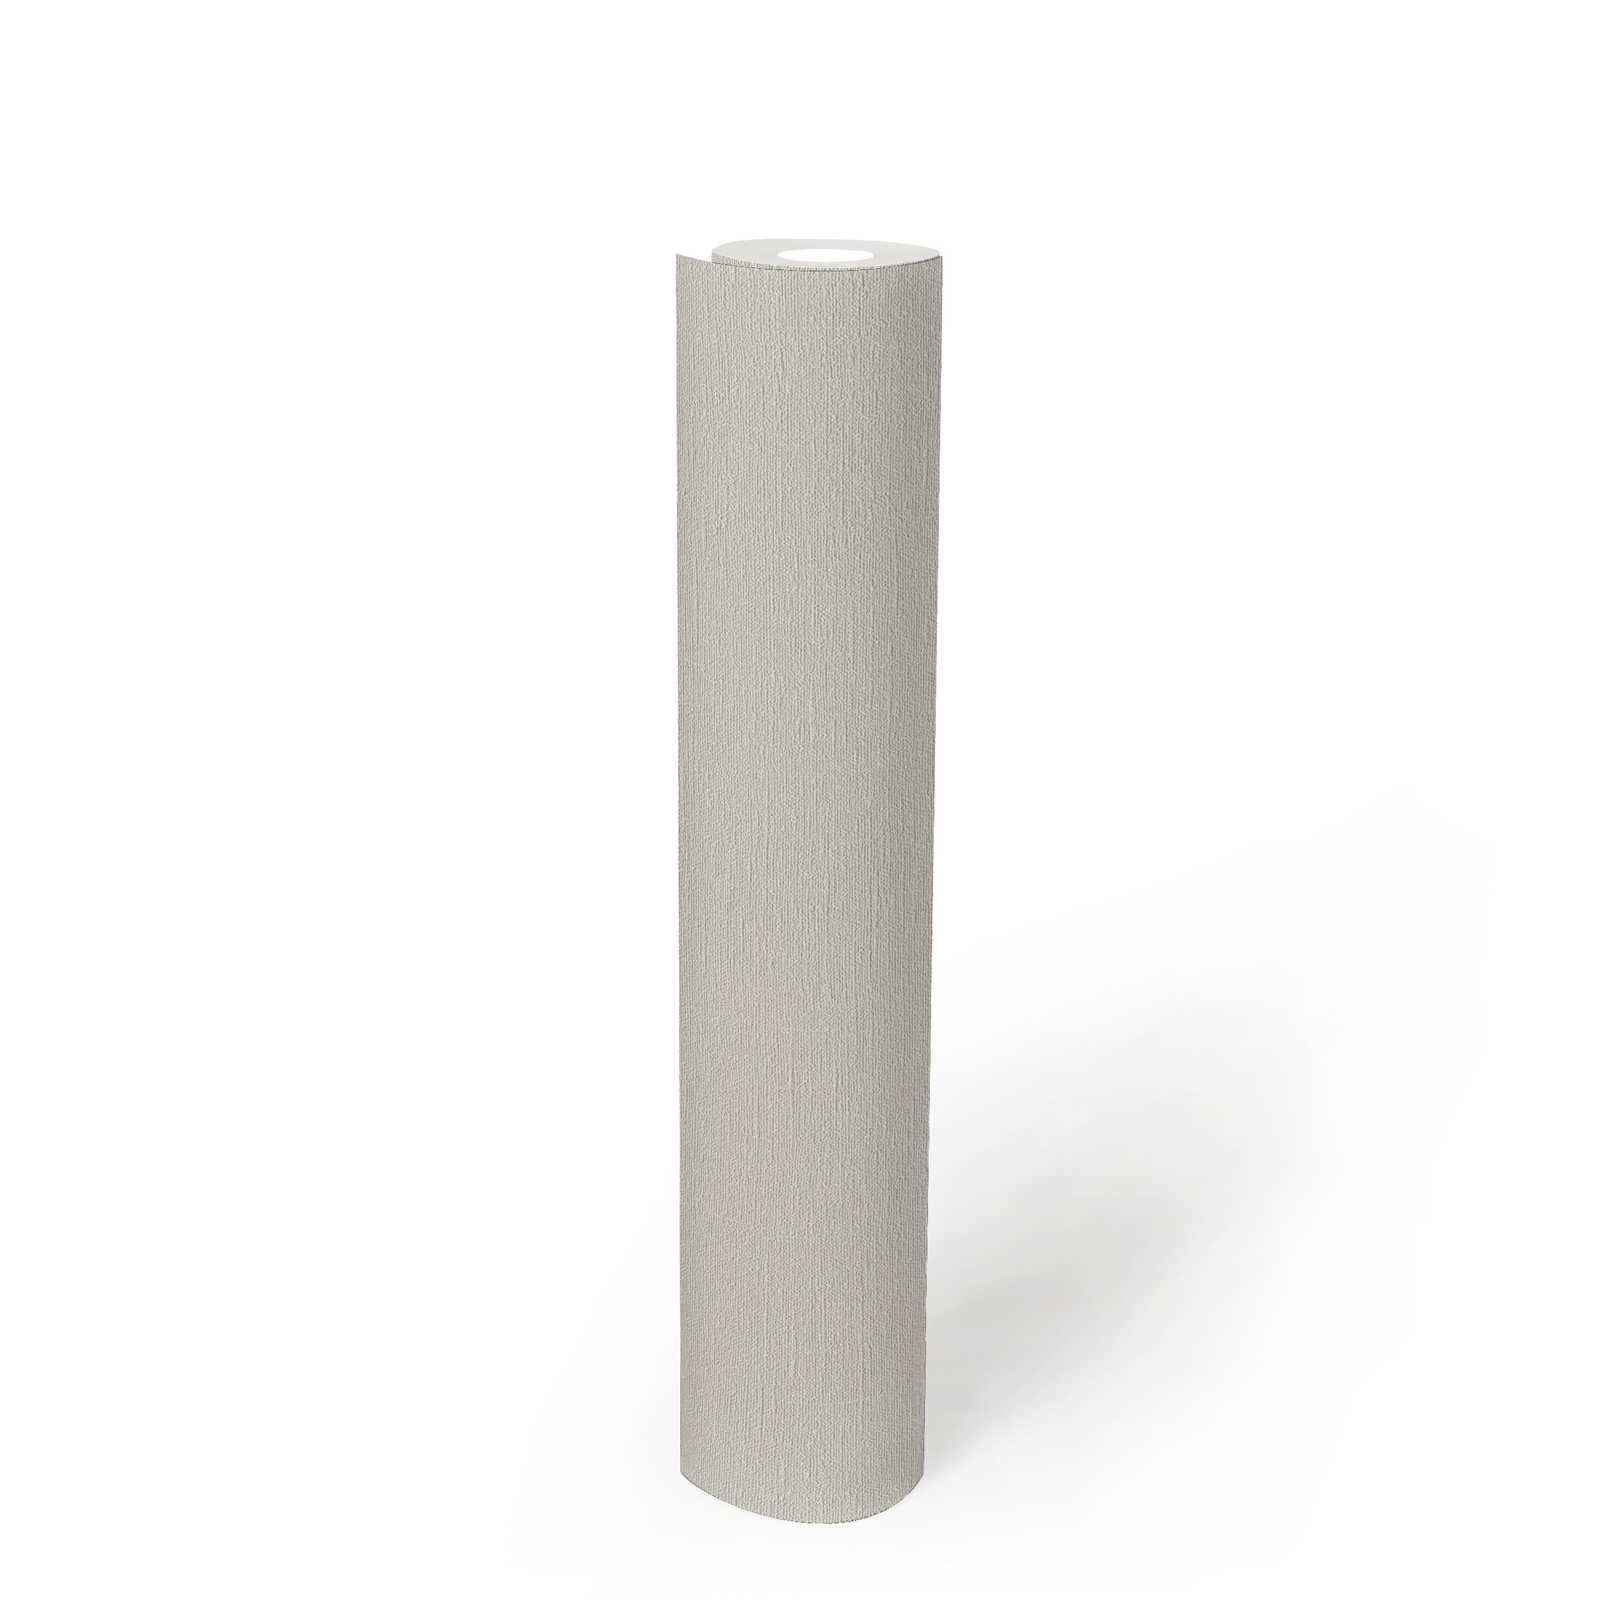             PVC-vrij behang met fijne structuur - grijs, wit
        